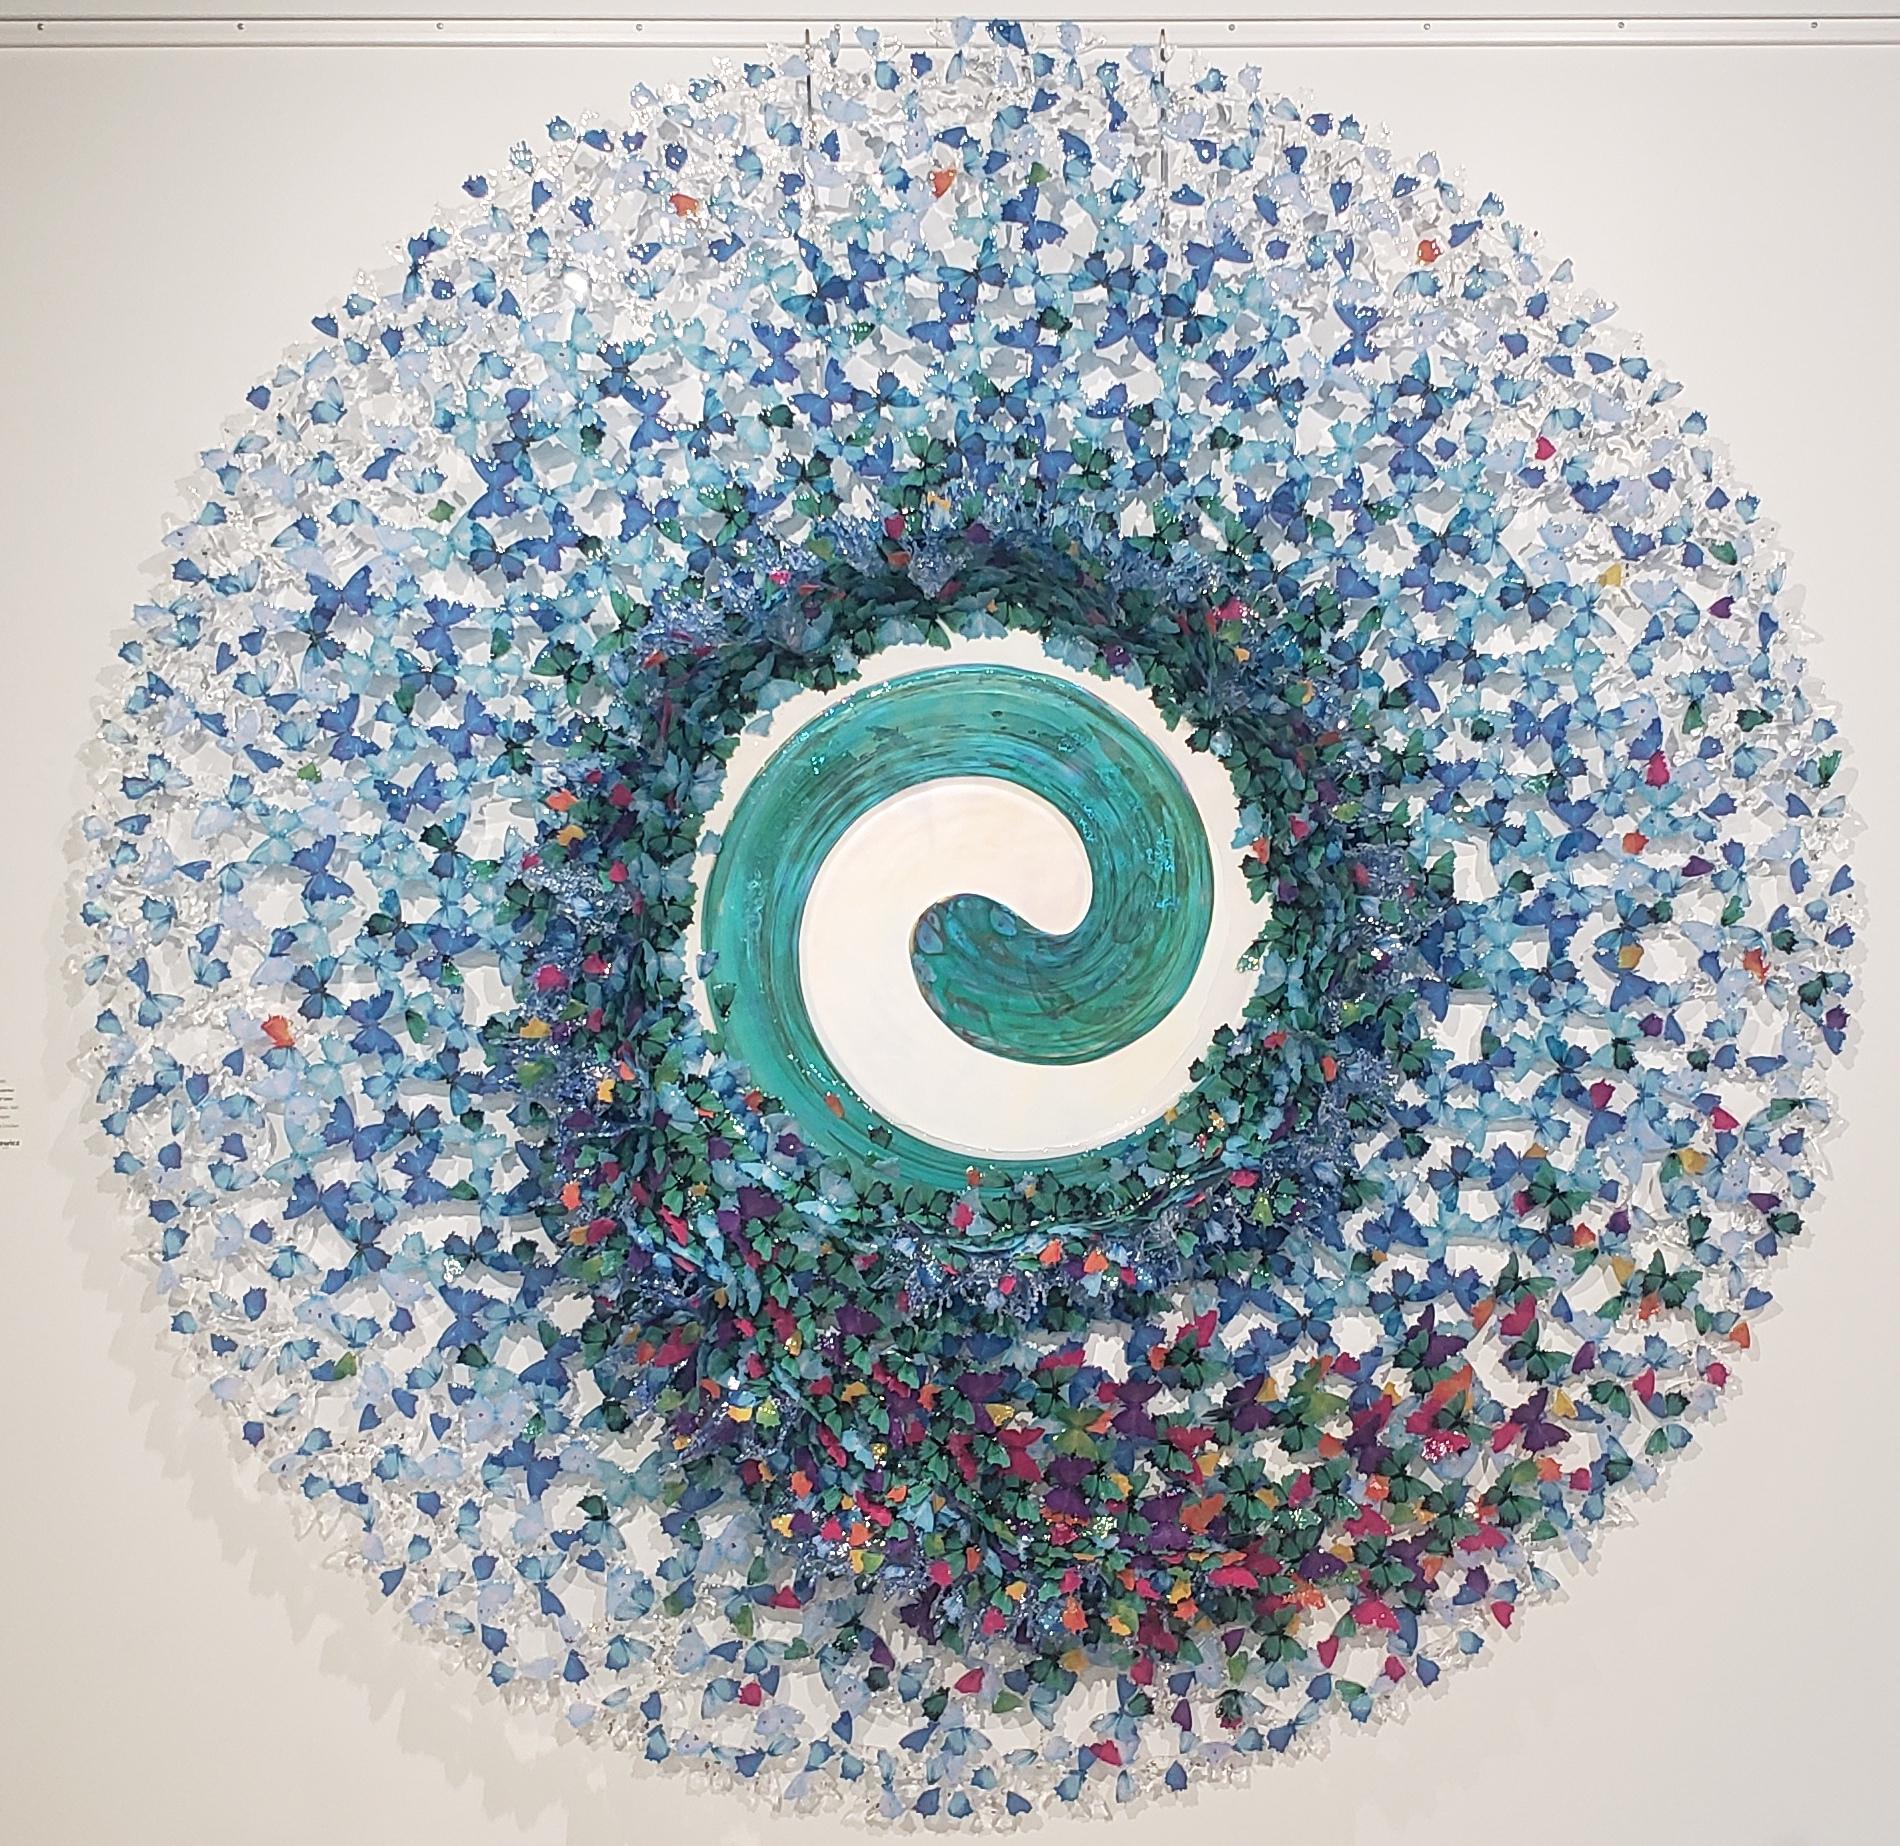 Annalù Abstract Sculpture - Dreamcatcher Spiral of Tales 180 cm